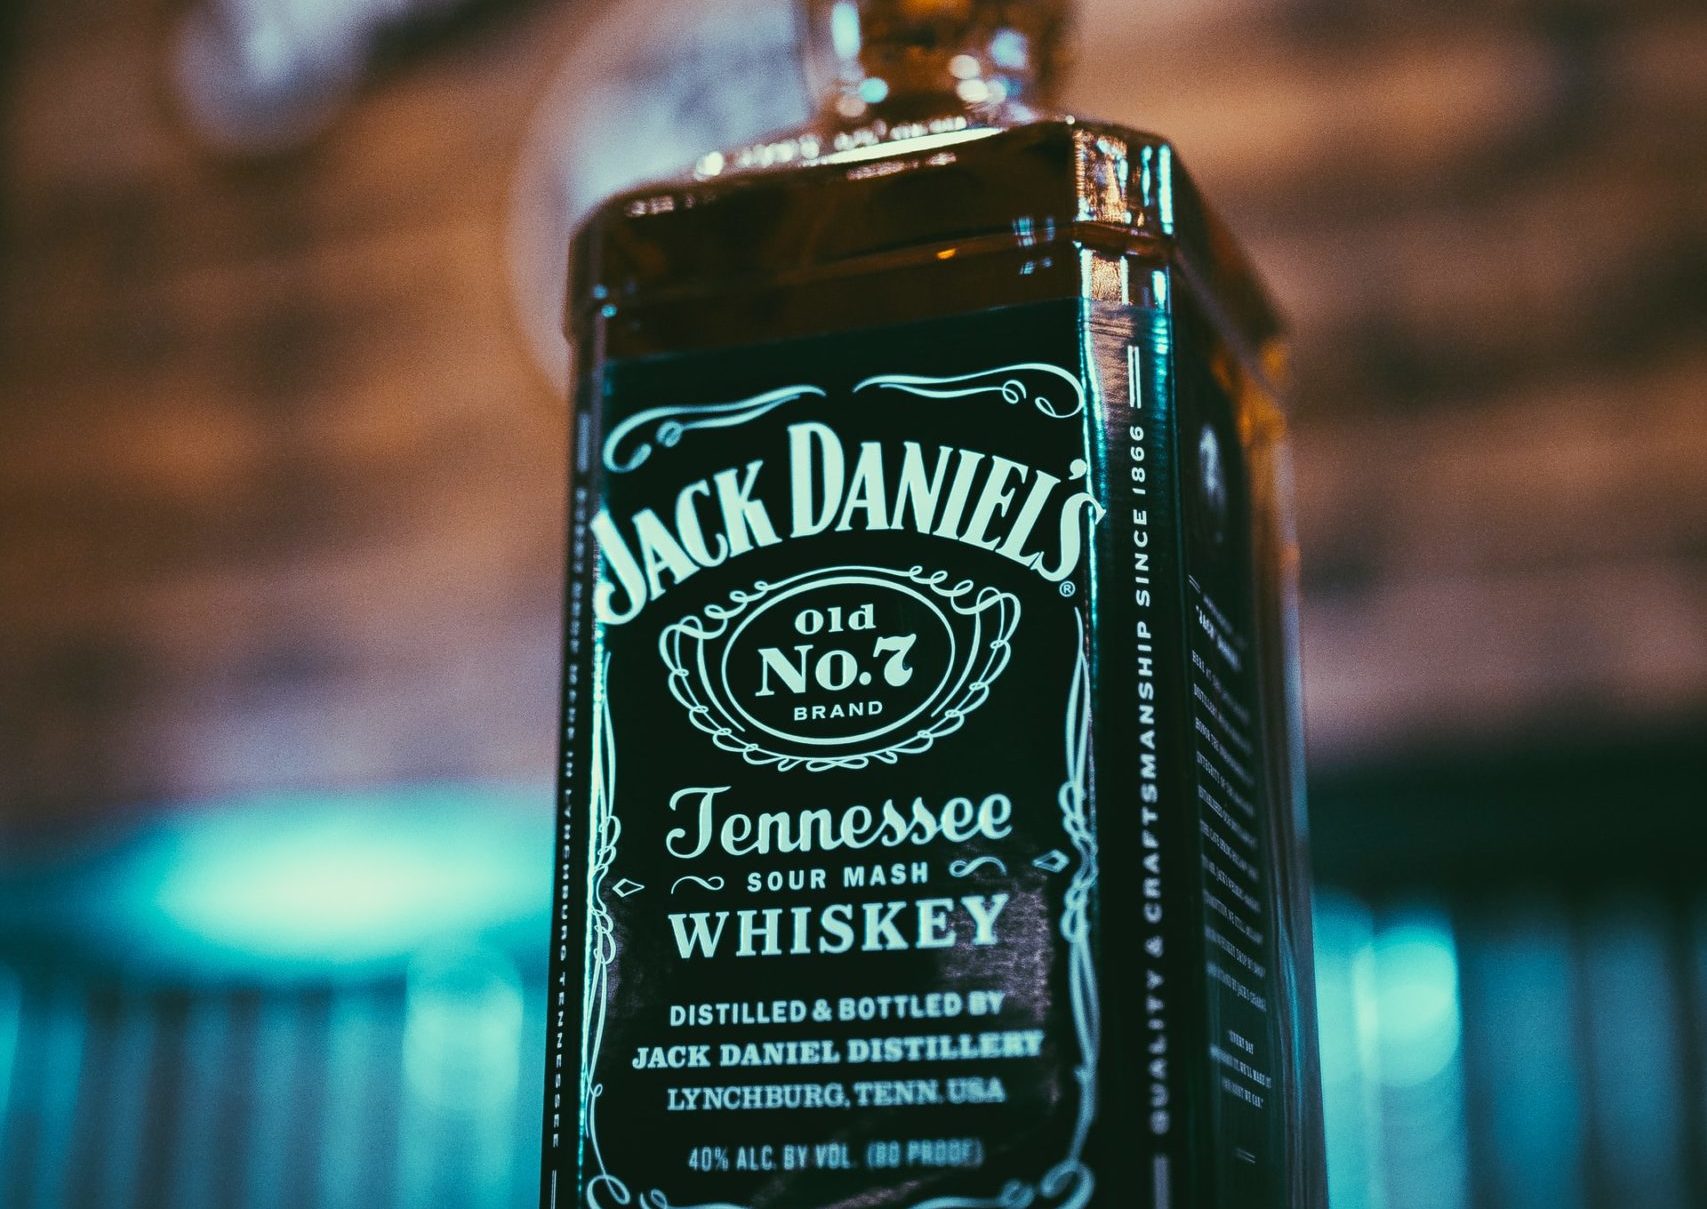 A bottle of Jack Daniel's